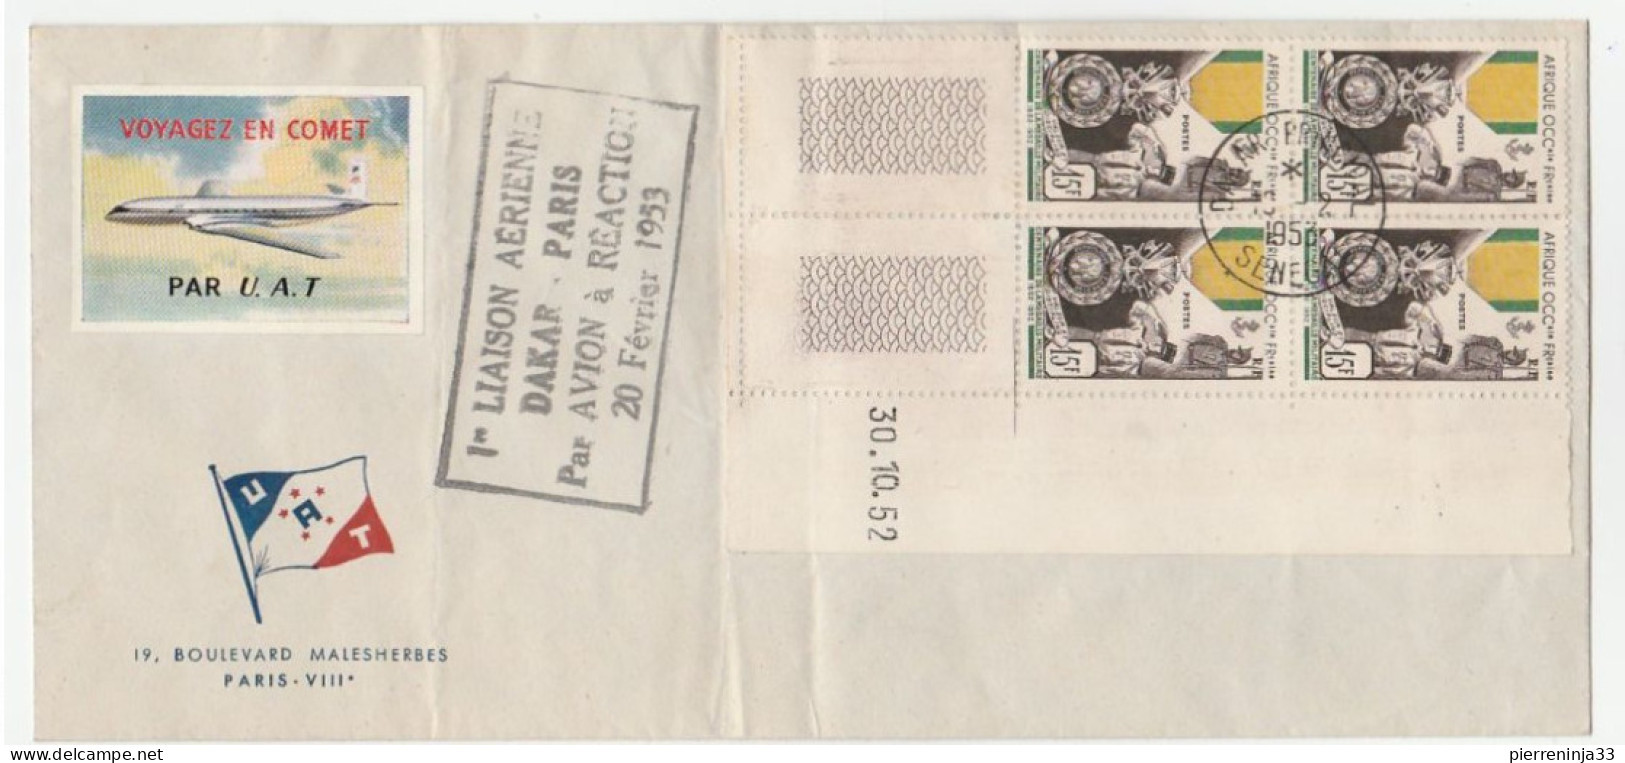 Lettre Avec Cachet 1ère Liaison Aérienne Et Coin Daté "Médaille Militaire AOF" + Vignette Aviation, 1953 - Briefe U. Dokumente